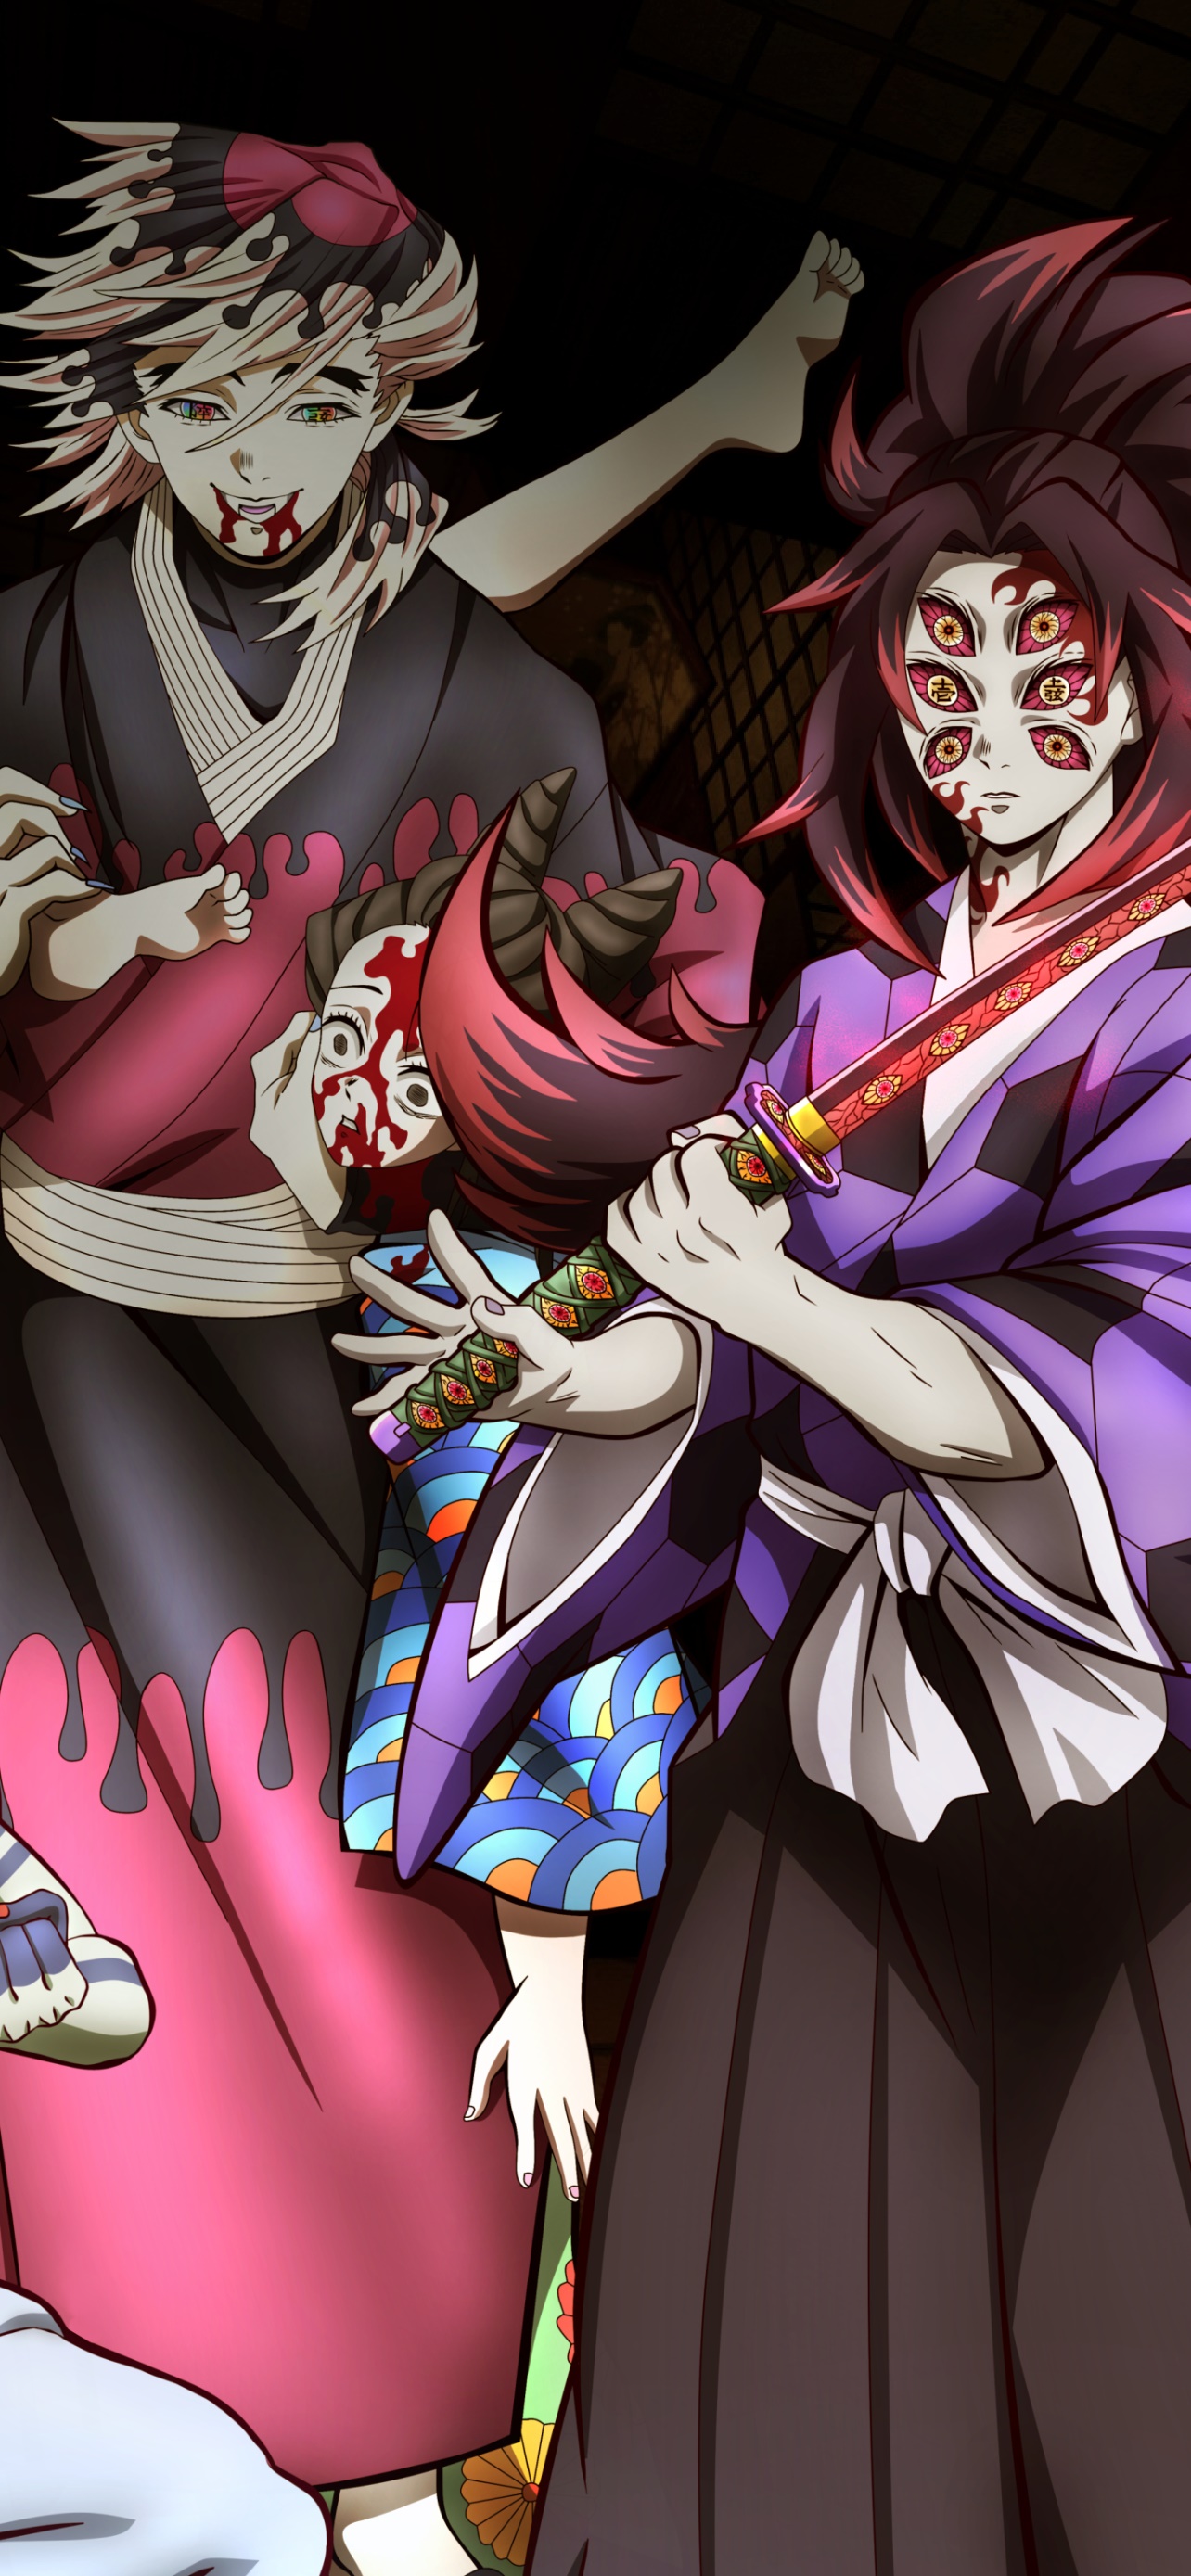 Wallpaper / Anime Demon Slayer: Kimetsu no Yaiba Phone Wallpaper, Kokushibo (Demon Slayer), Akaza (Demon Slayer: Kimetsu No Yaiba), 1284x2778 free download